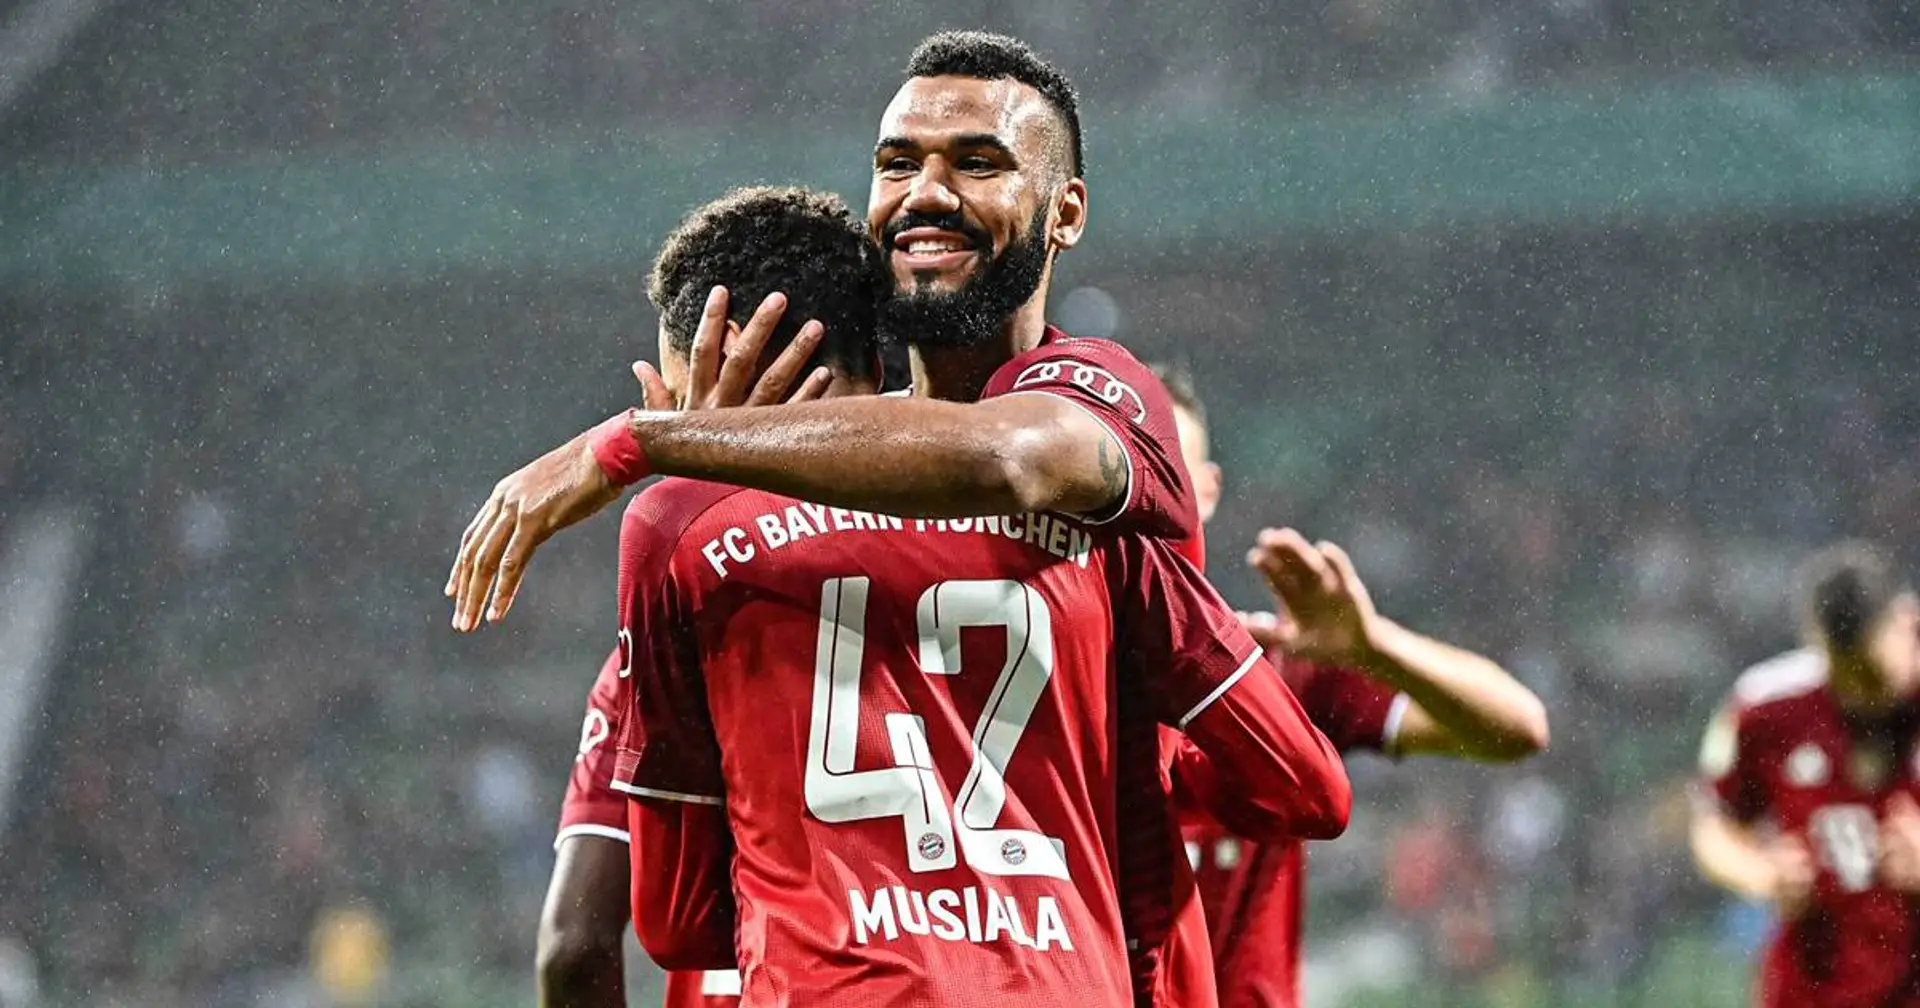 Choupo und Musiala mit Note 1: Spielernoten zum 12:0-Sieg gegen den Bremer SV im Pokal